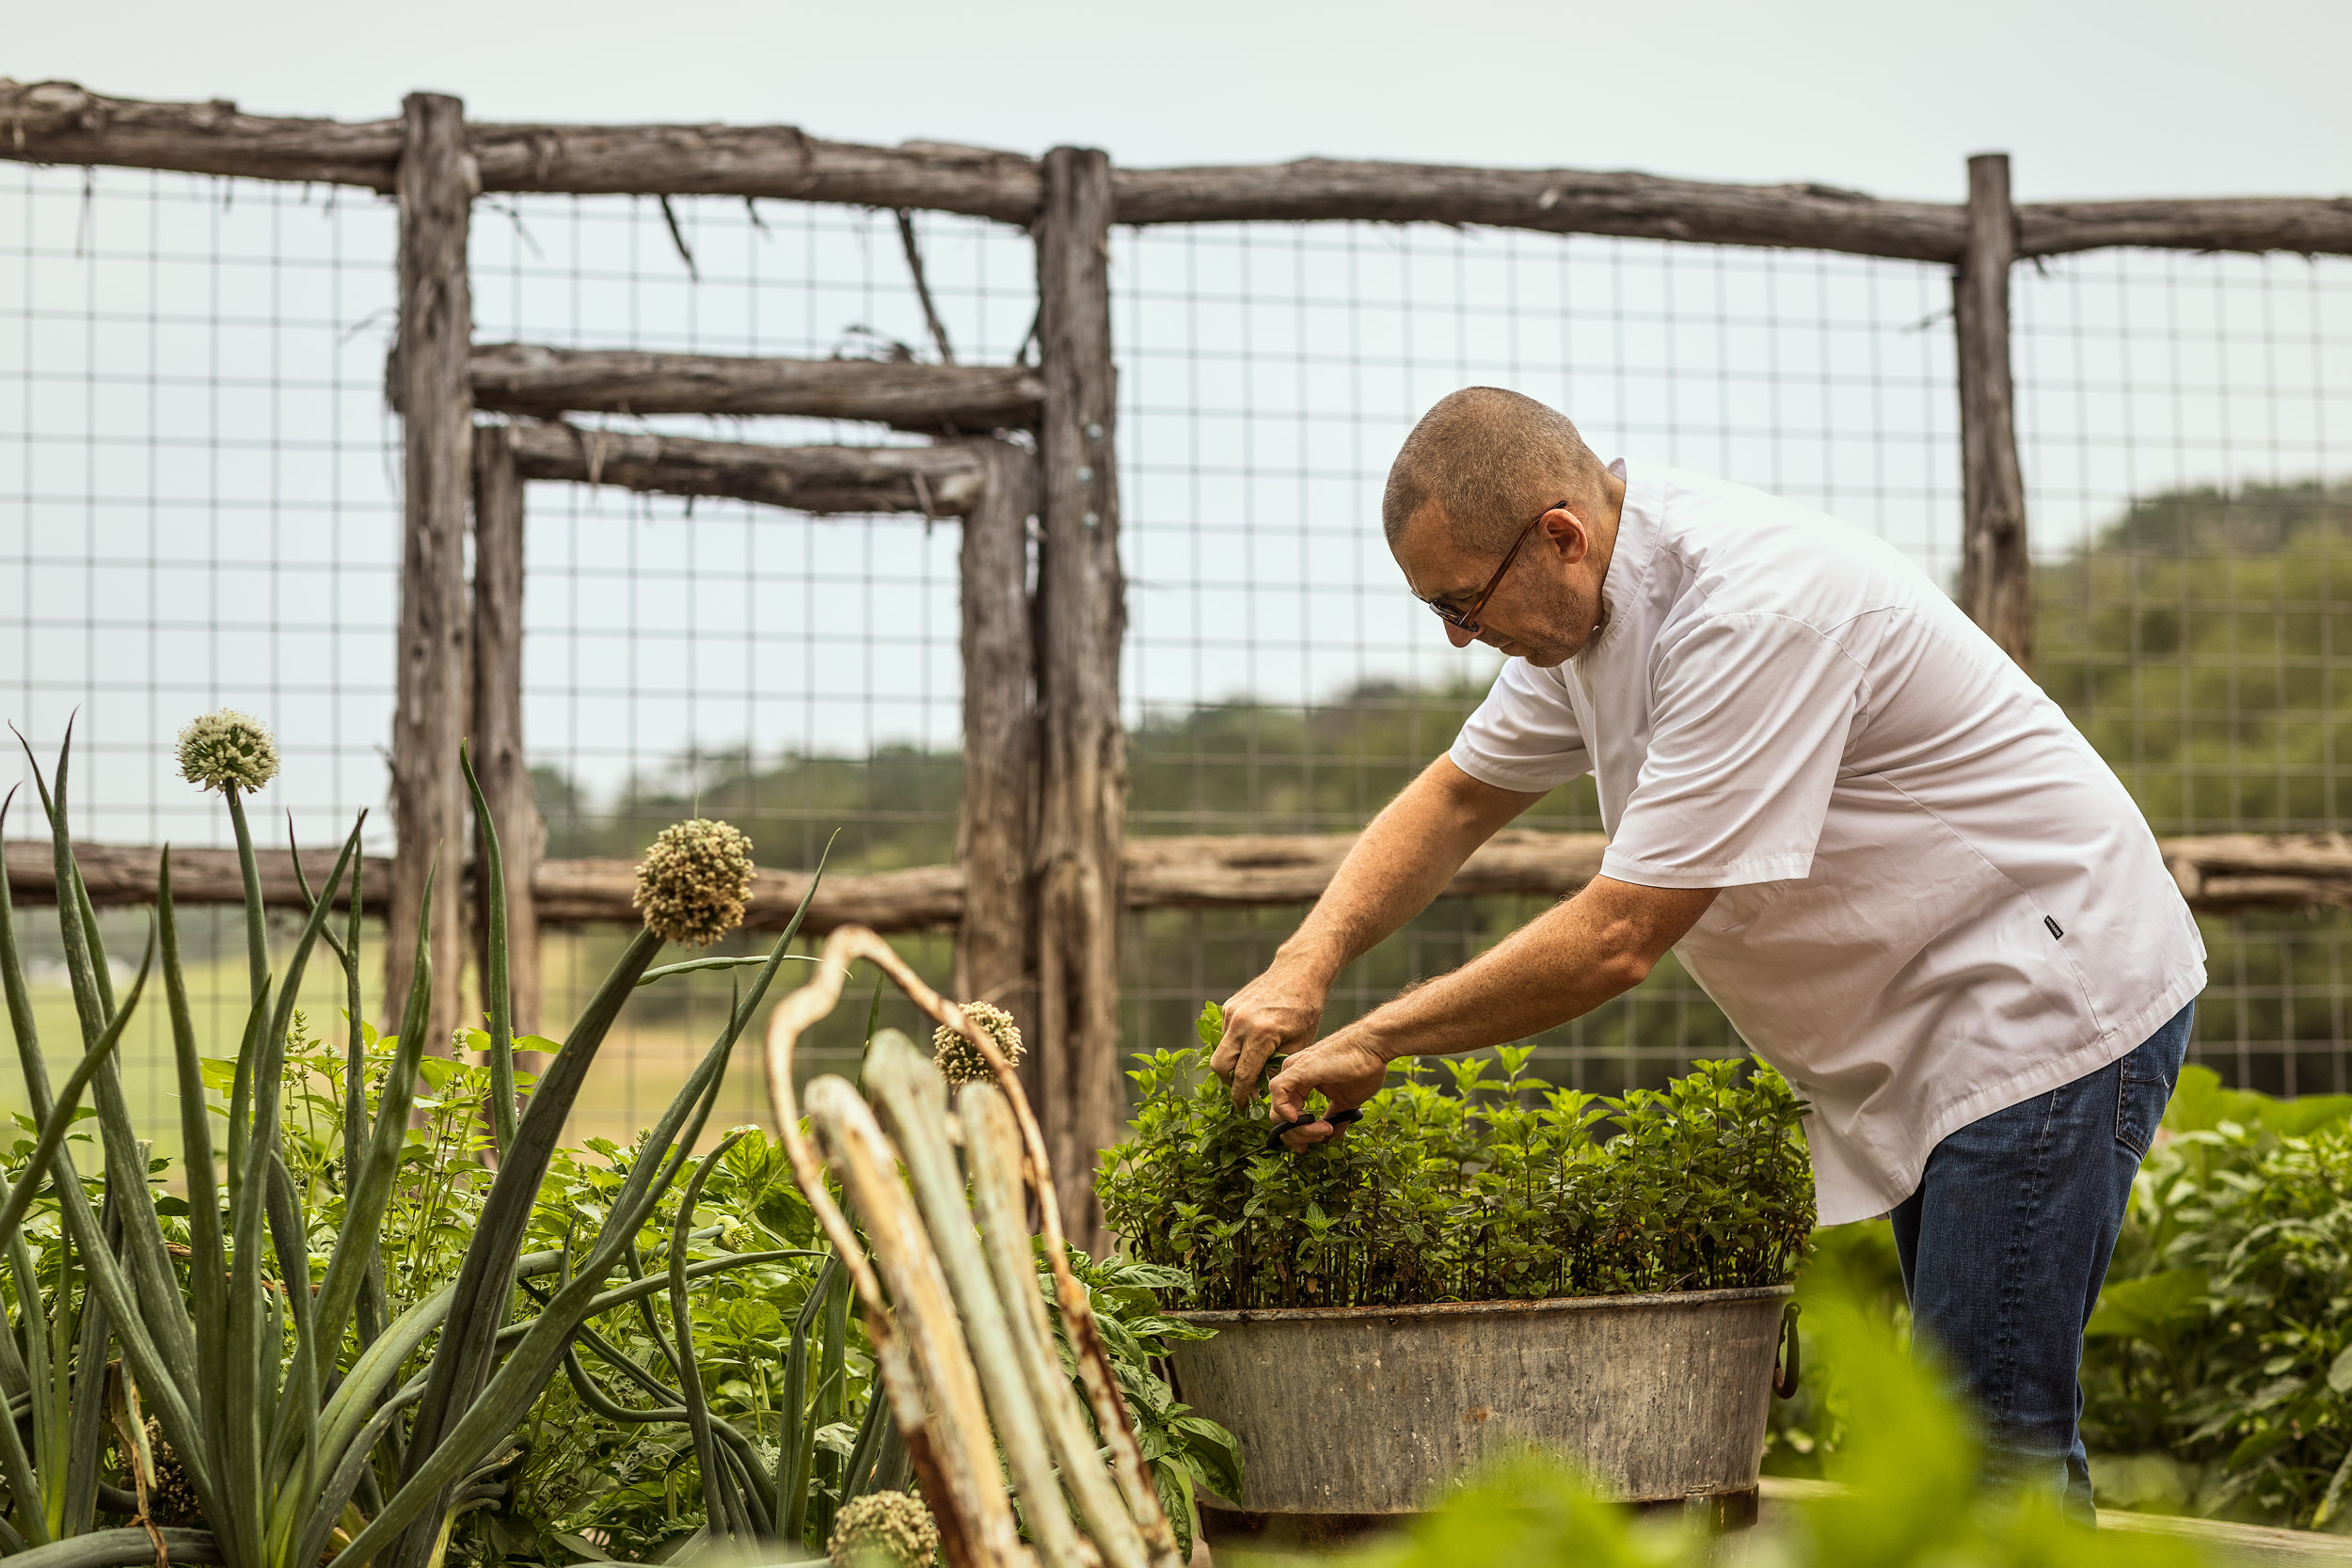 chef andrew weissman picks herbs from restaurant garden in san antonio